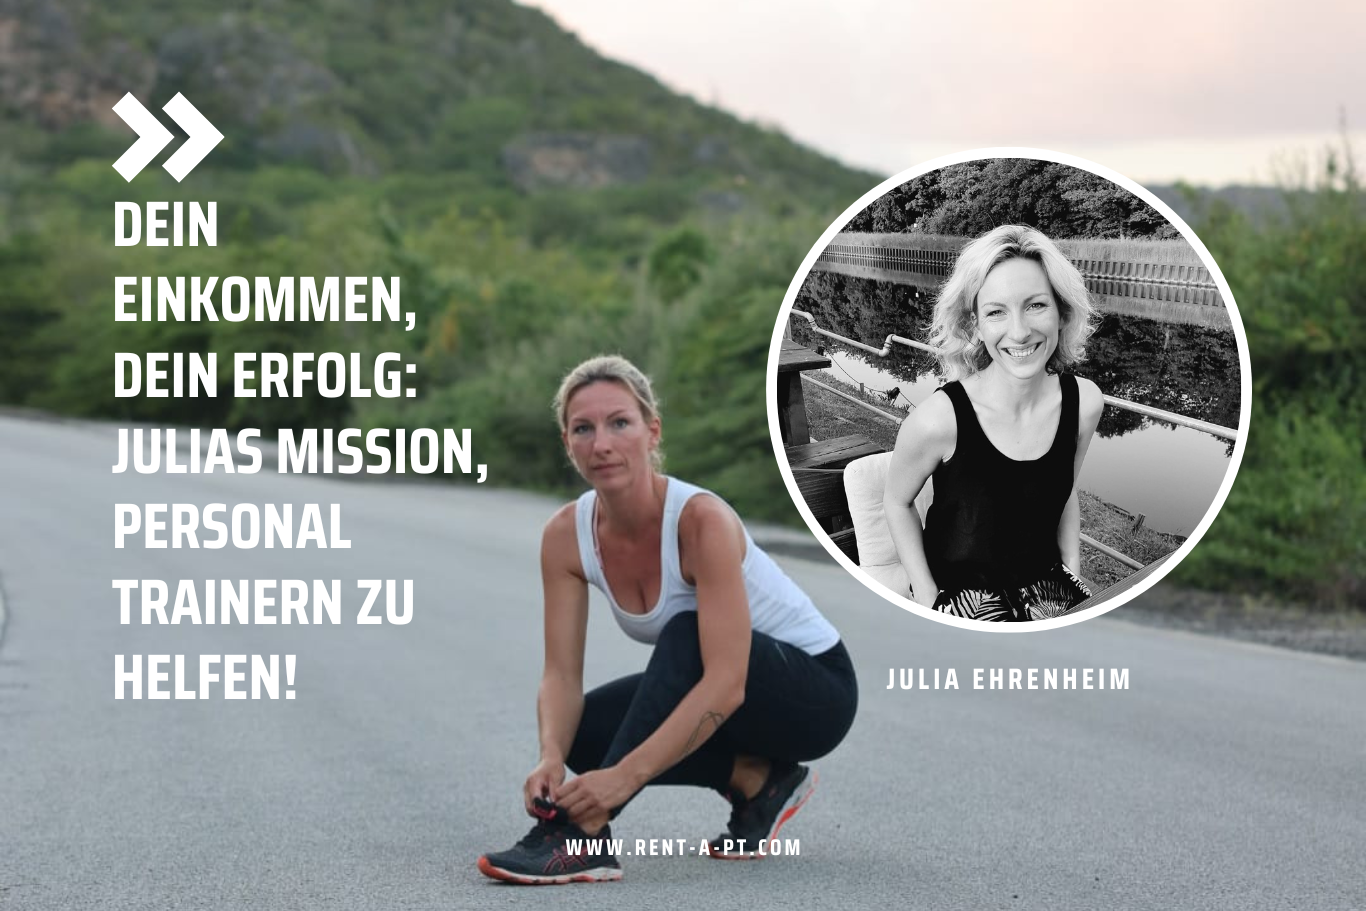 Julia Ehrenheim im RAPT Interview. Dein Einkommen, dein Erfolg Julias Mission, Personaltrainern zu helfen